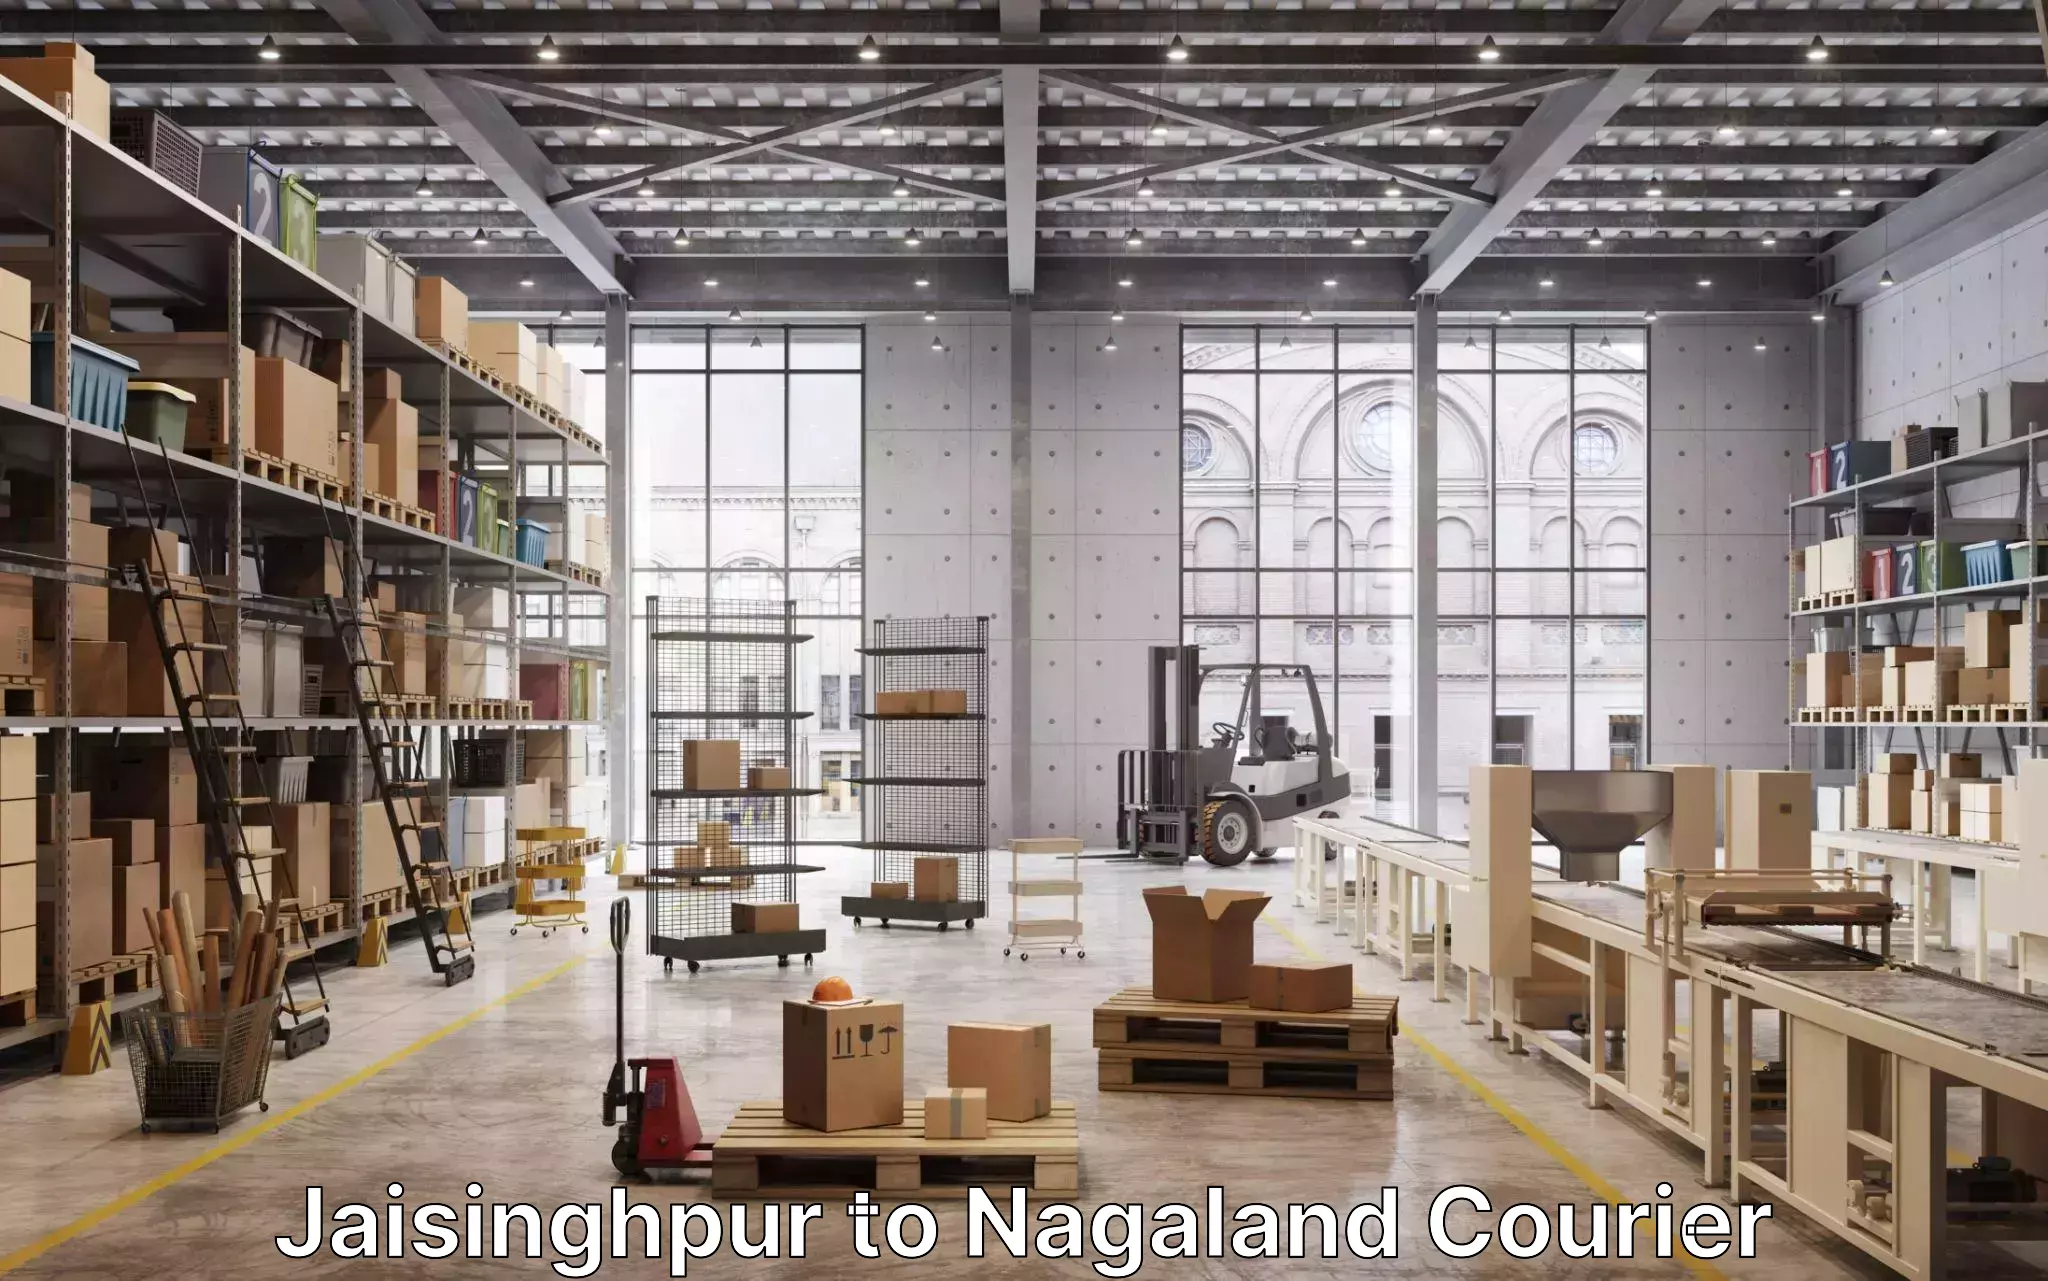 Quality moving services Jaisinghpur to Nagaland